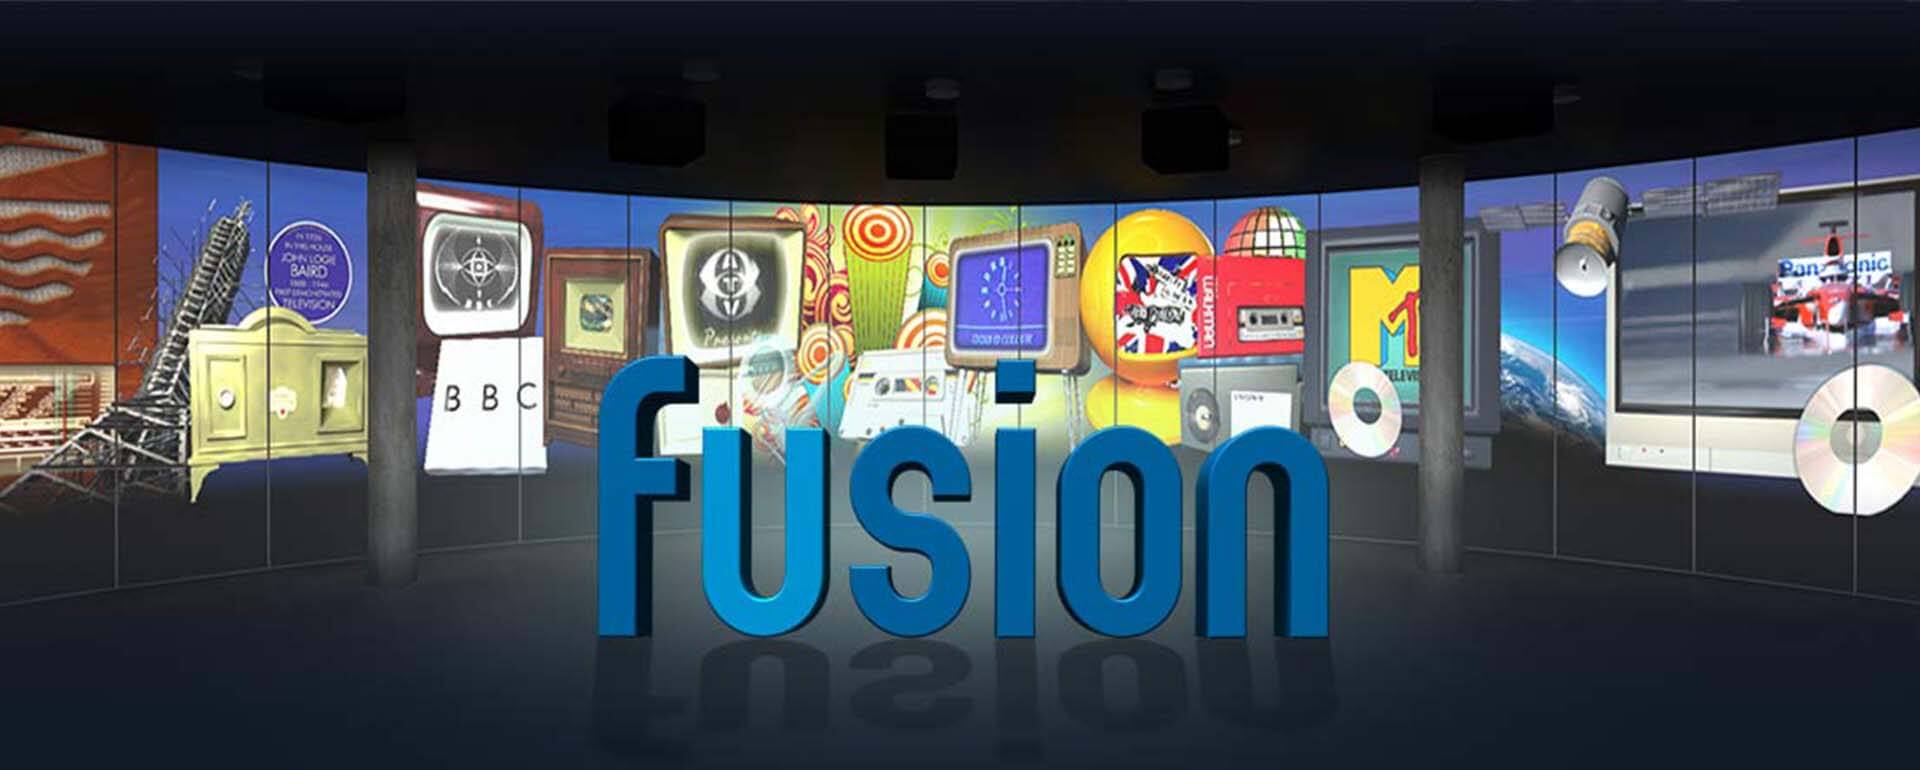 Fusion Watchout Show Forum Trust